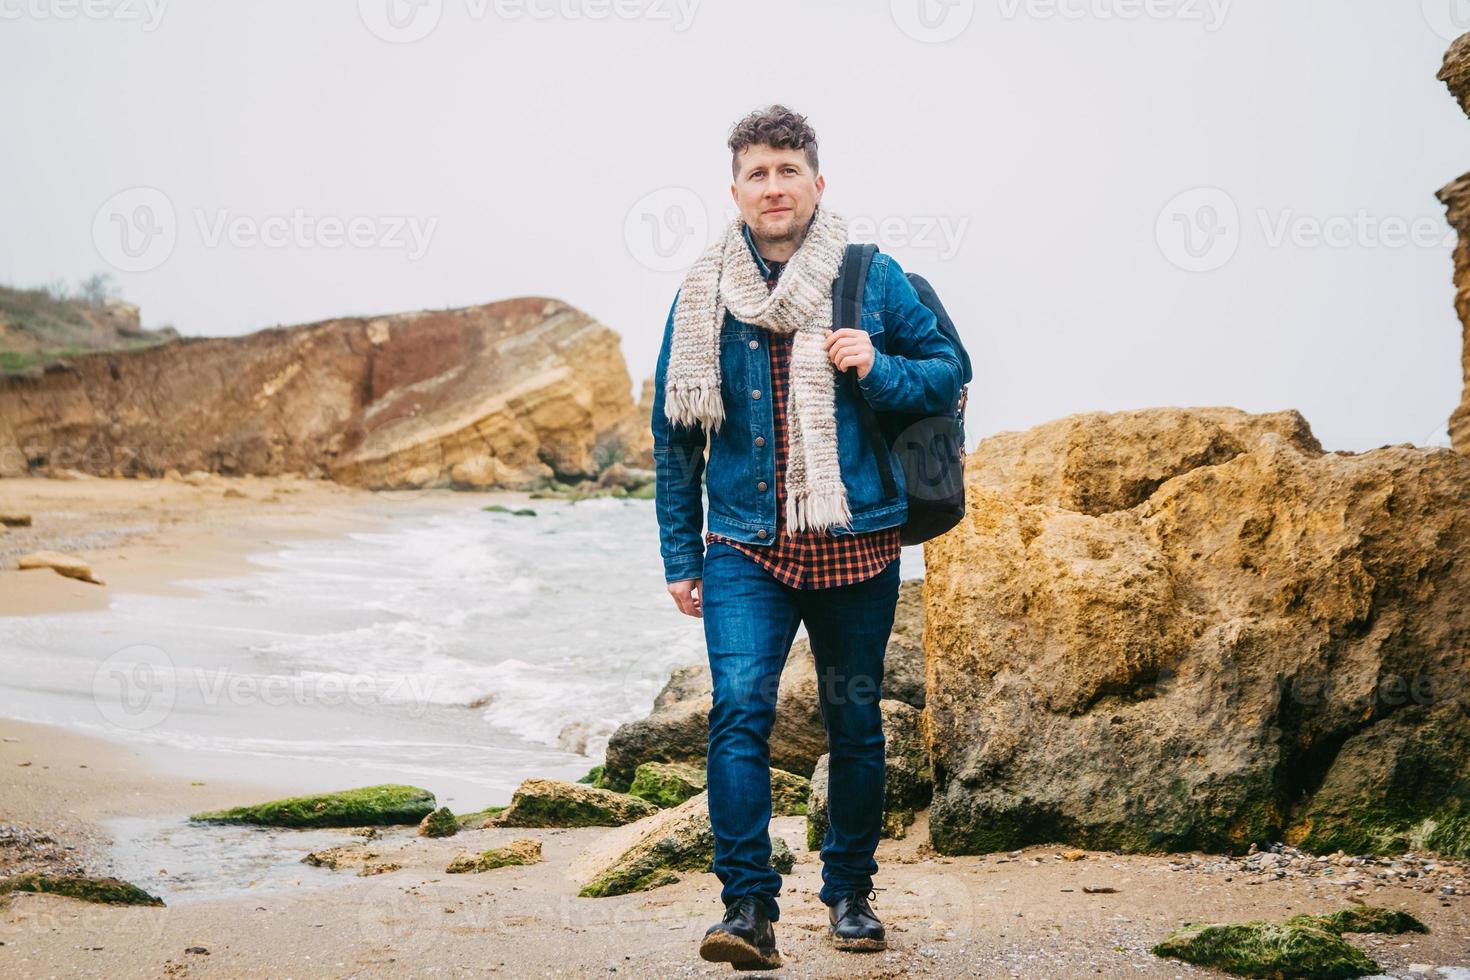 Reisender Mann mit Rucksack, der am Sandstrand inmitten von Felsen vor Meereshintergrund steht foto